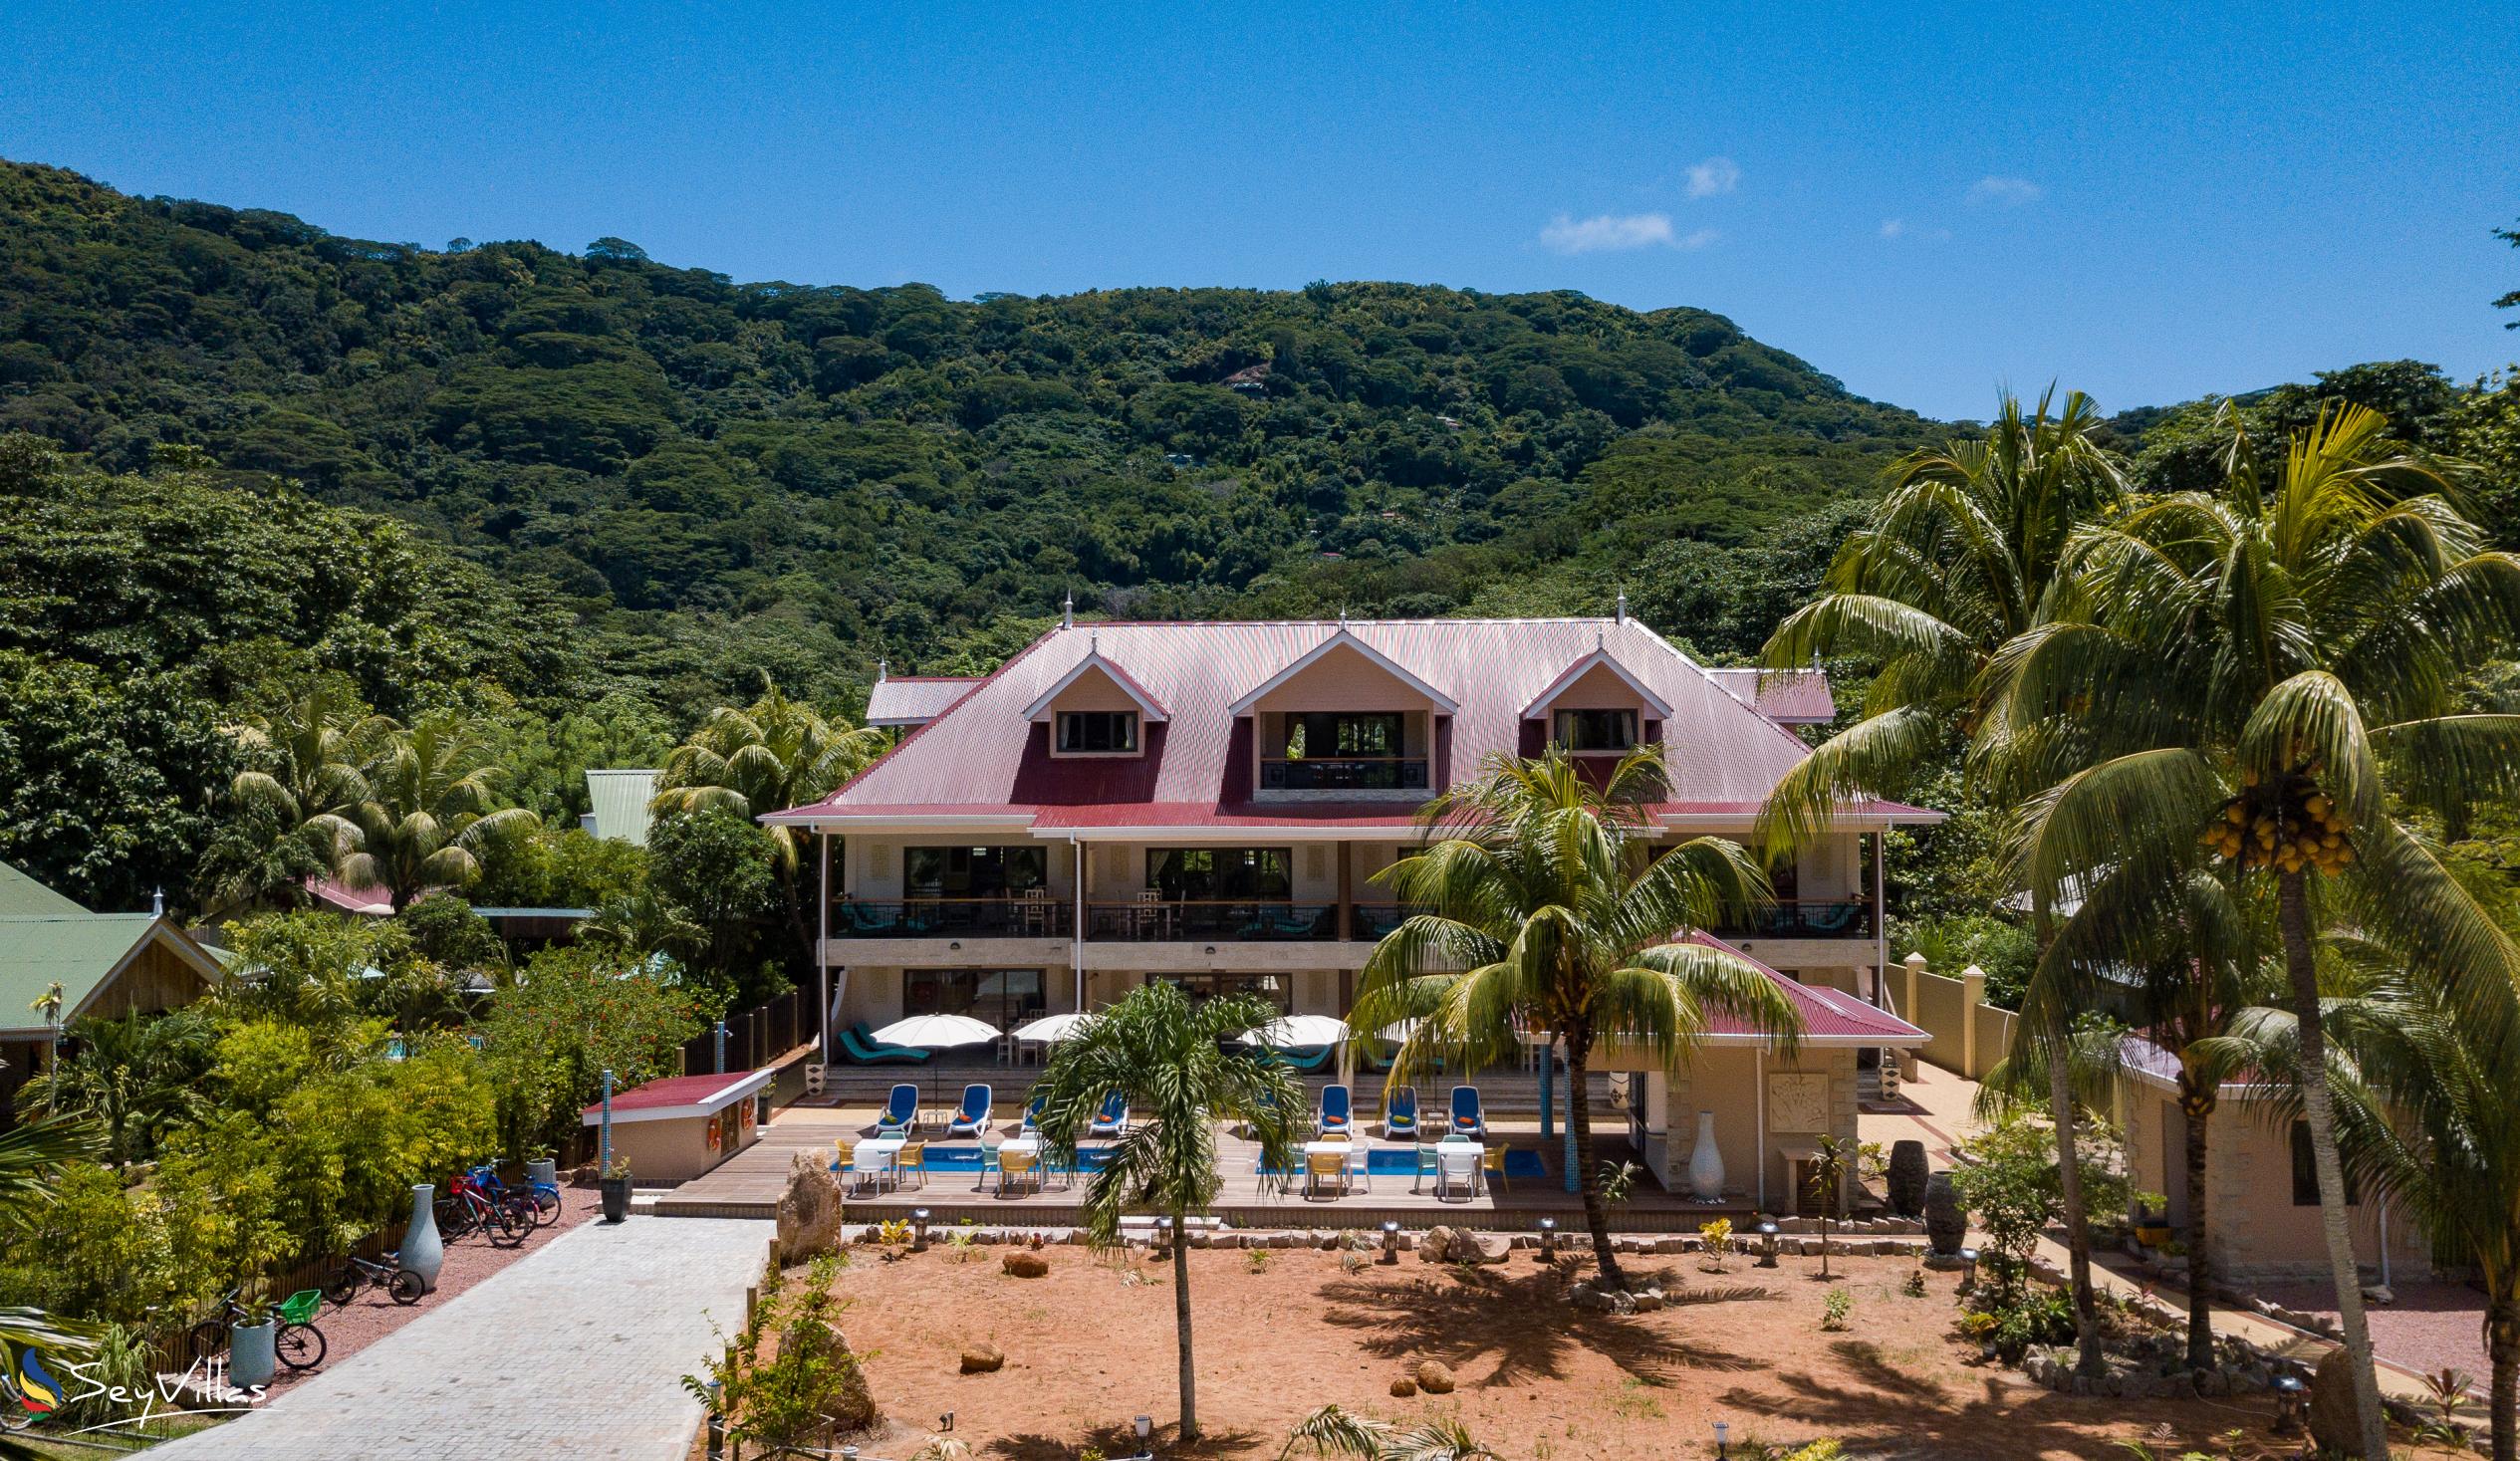 Photo 111: Casa de Leela - Deluxe Apartment - La Digue (Seychelles)